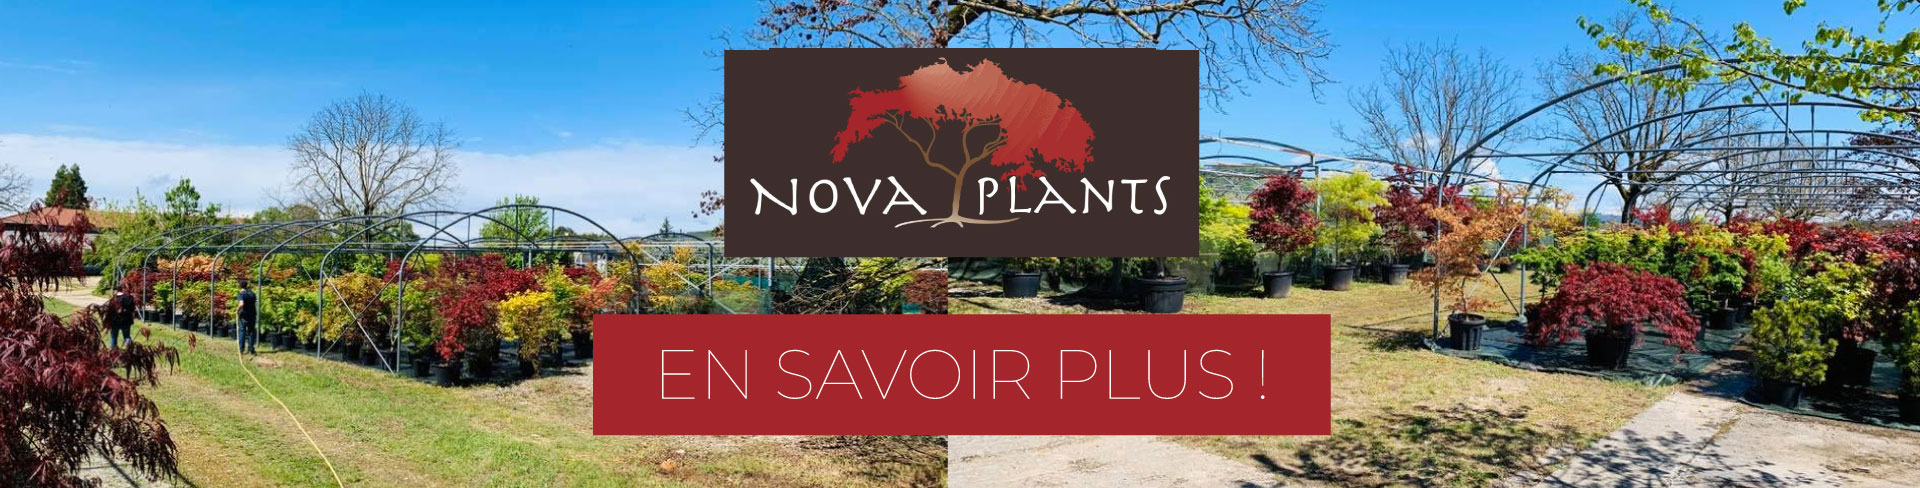 En savoir plus Nova plants